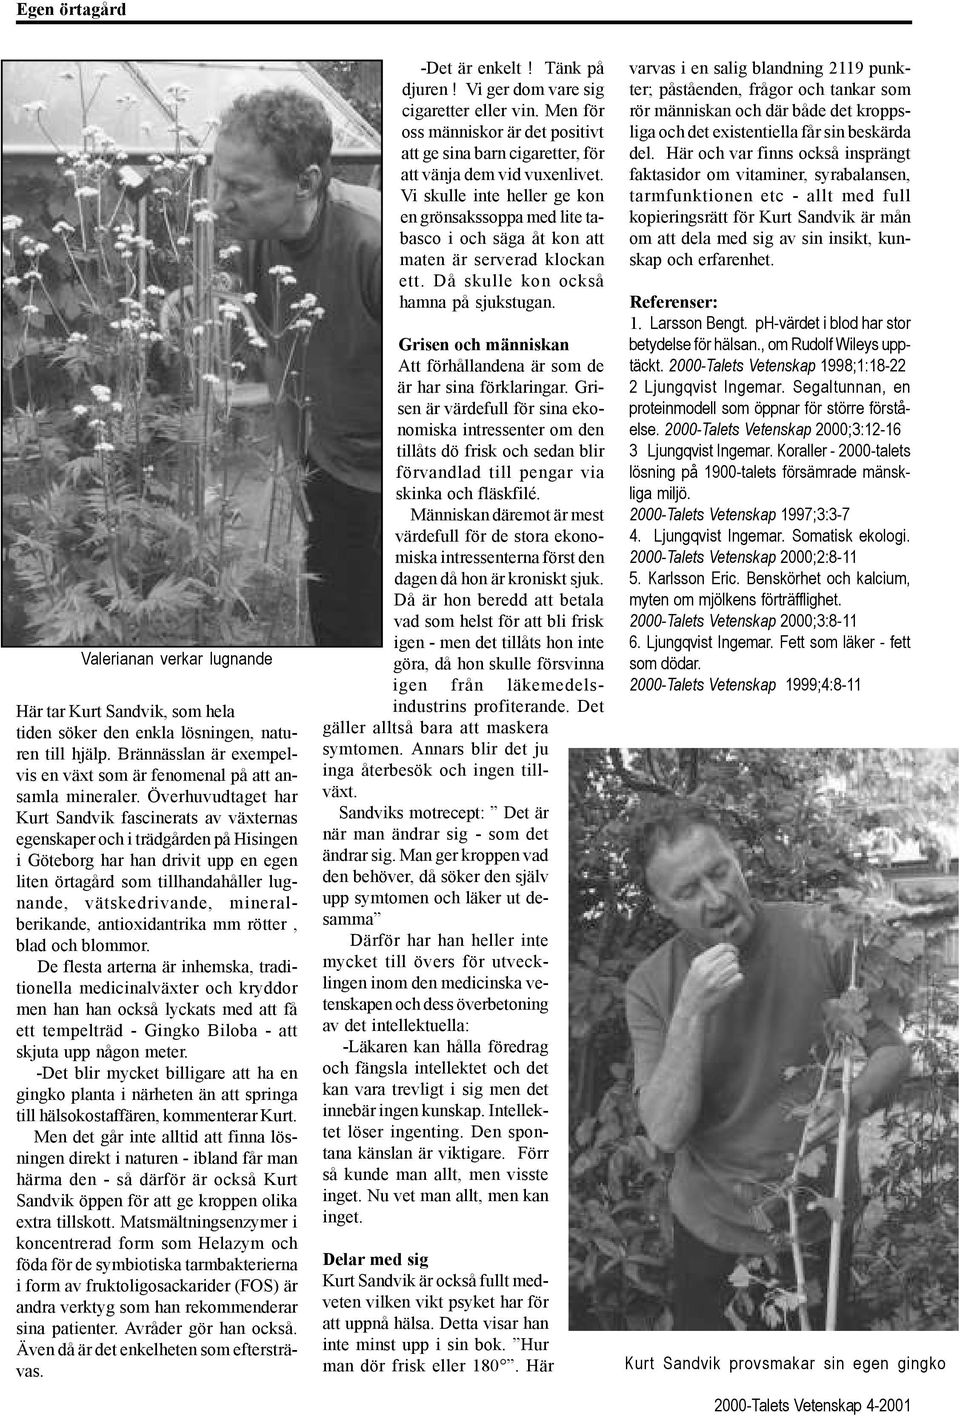 Överhuvudtaget har Kurt Sandvik fascinerats av växternas egenskaper och i trädgården på Hisingen i Göteborg har han drivit upp en egen liten örtagård som tillhandahåller lugnande, vätskedrivande,